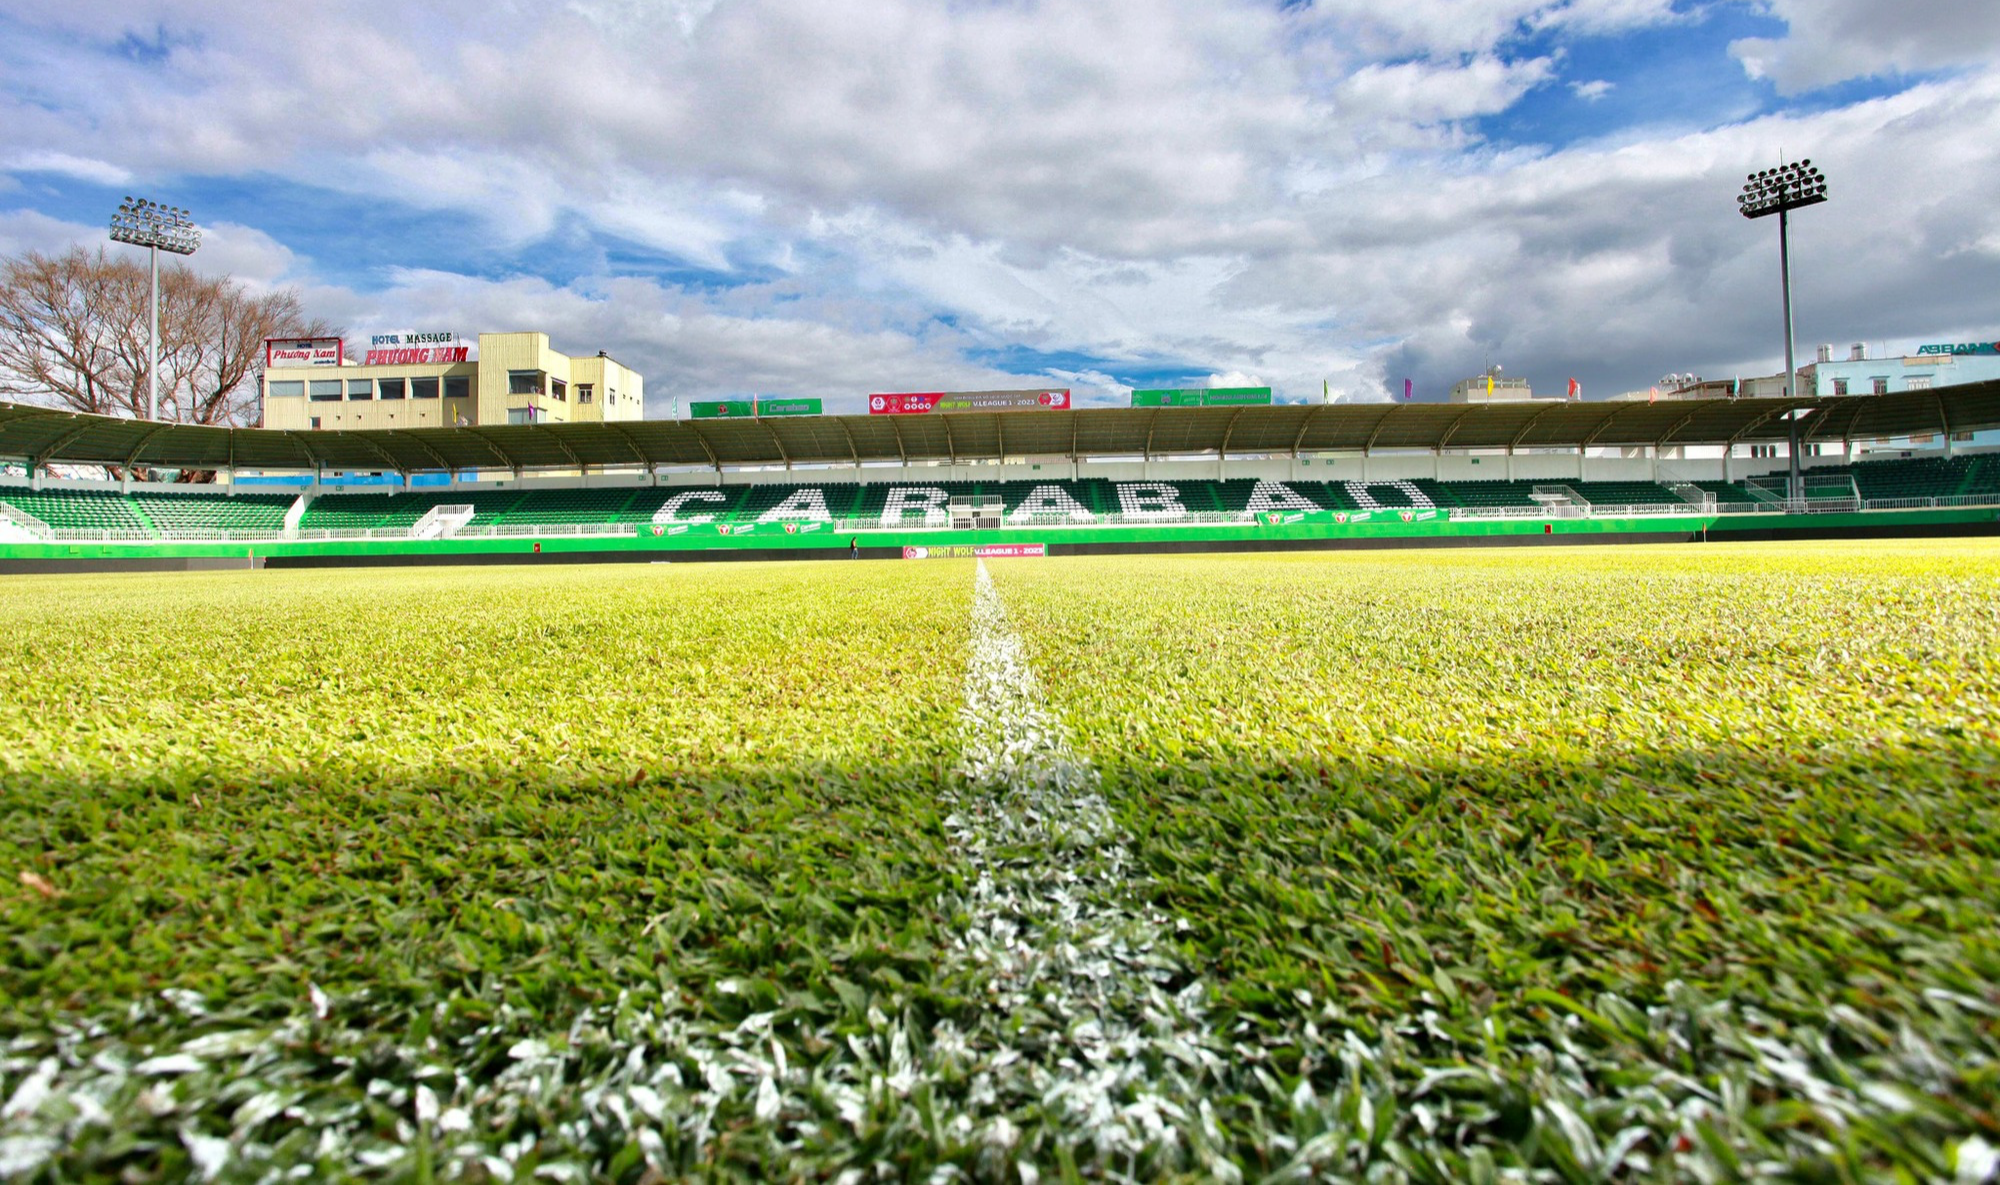 Đã mắt với mặt cỏ xanh mướt của sân nhà HAGL trước trận ra quân V-League - Ảnh 2.